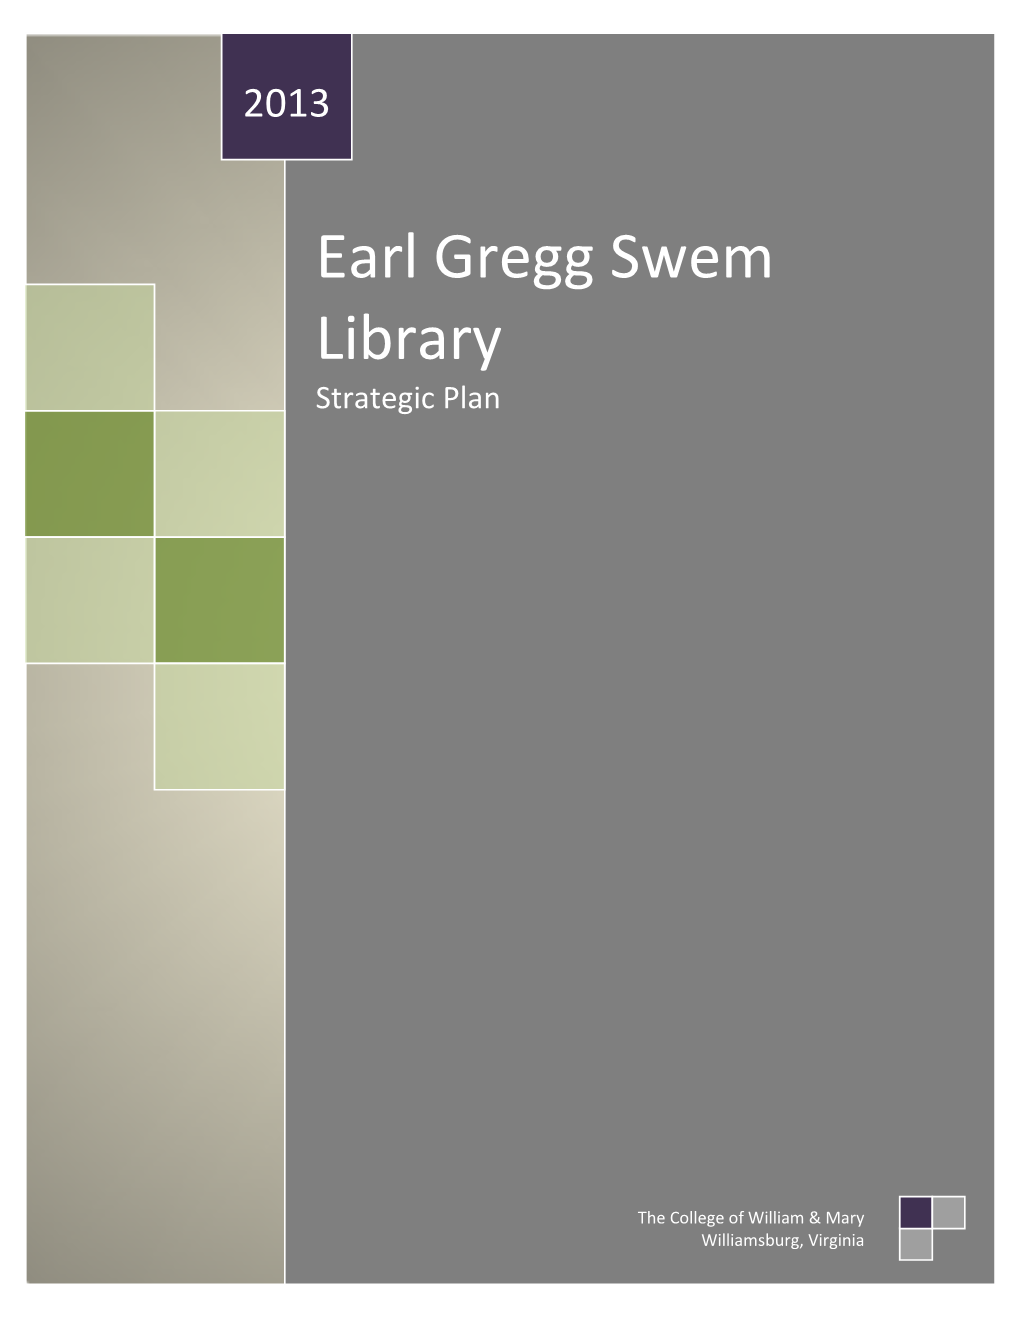 Earl Gregg Swem Library Strategic Plan